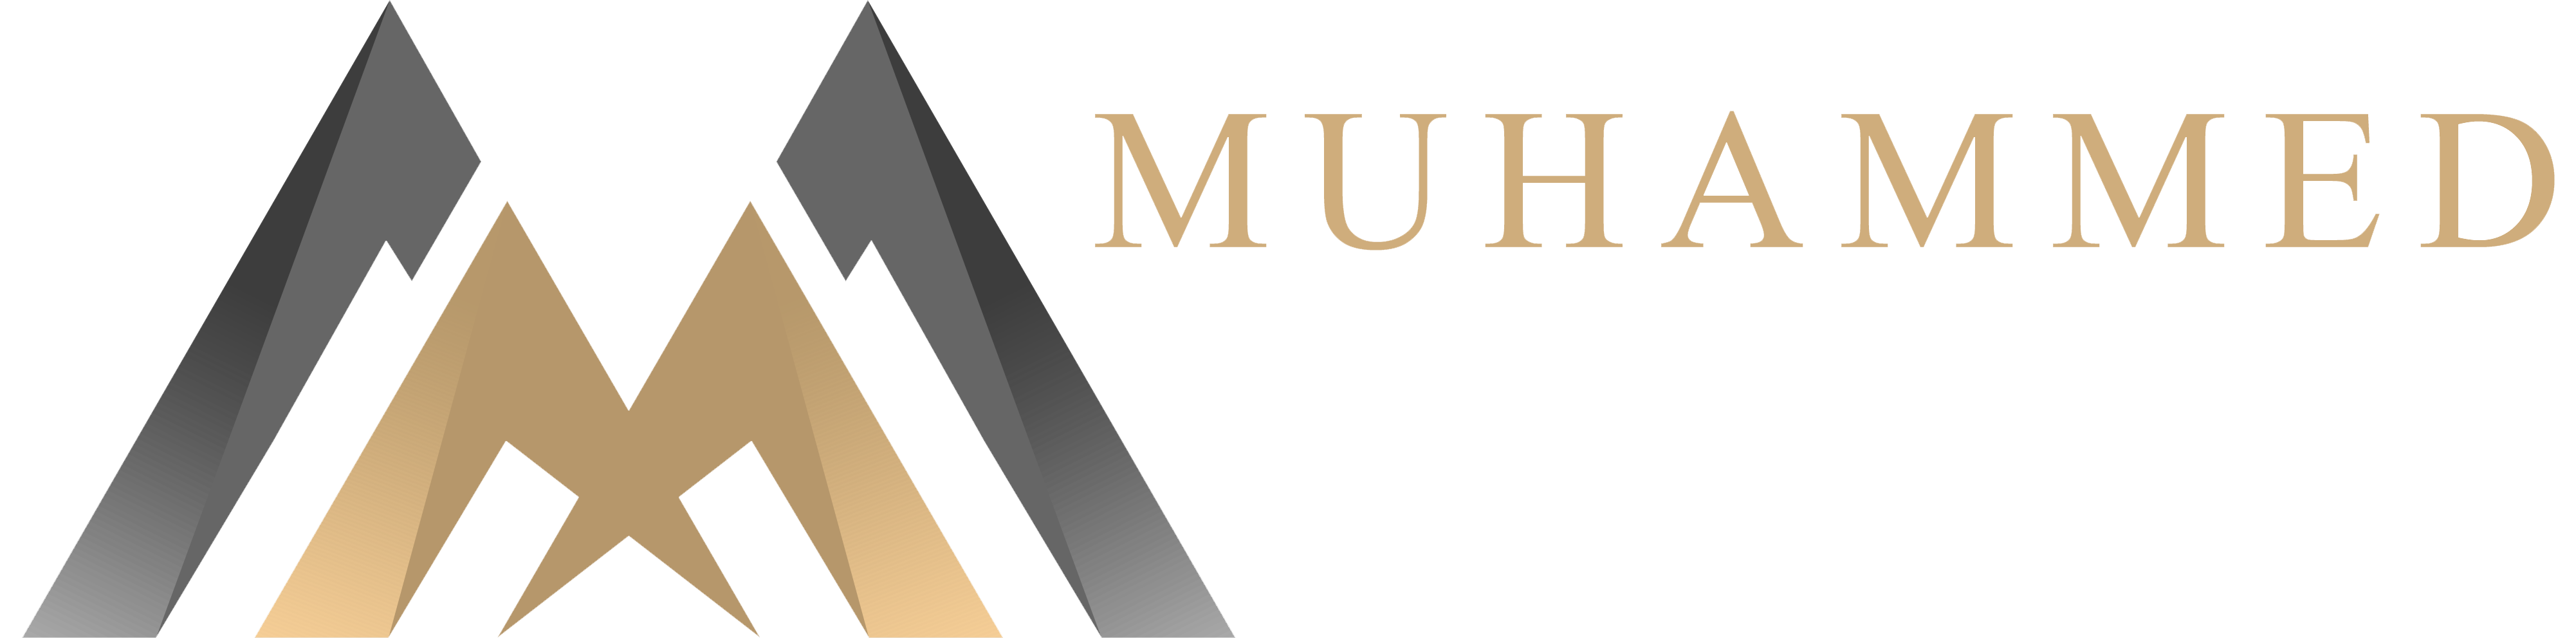 Official Muhammed Akay Website